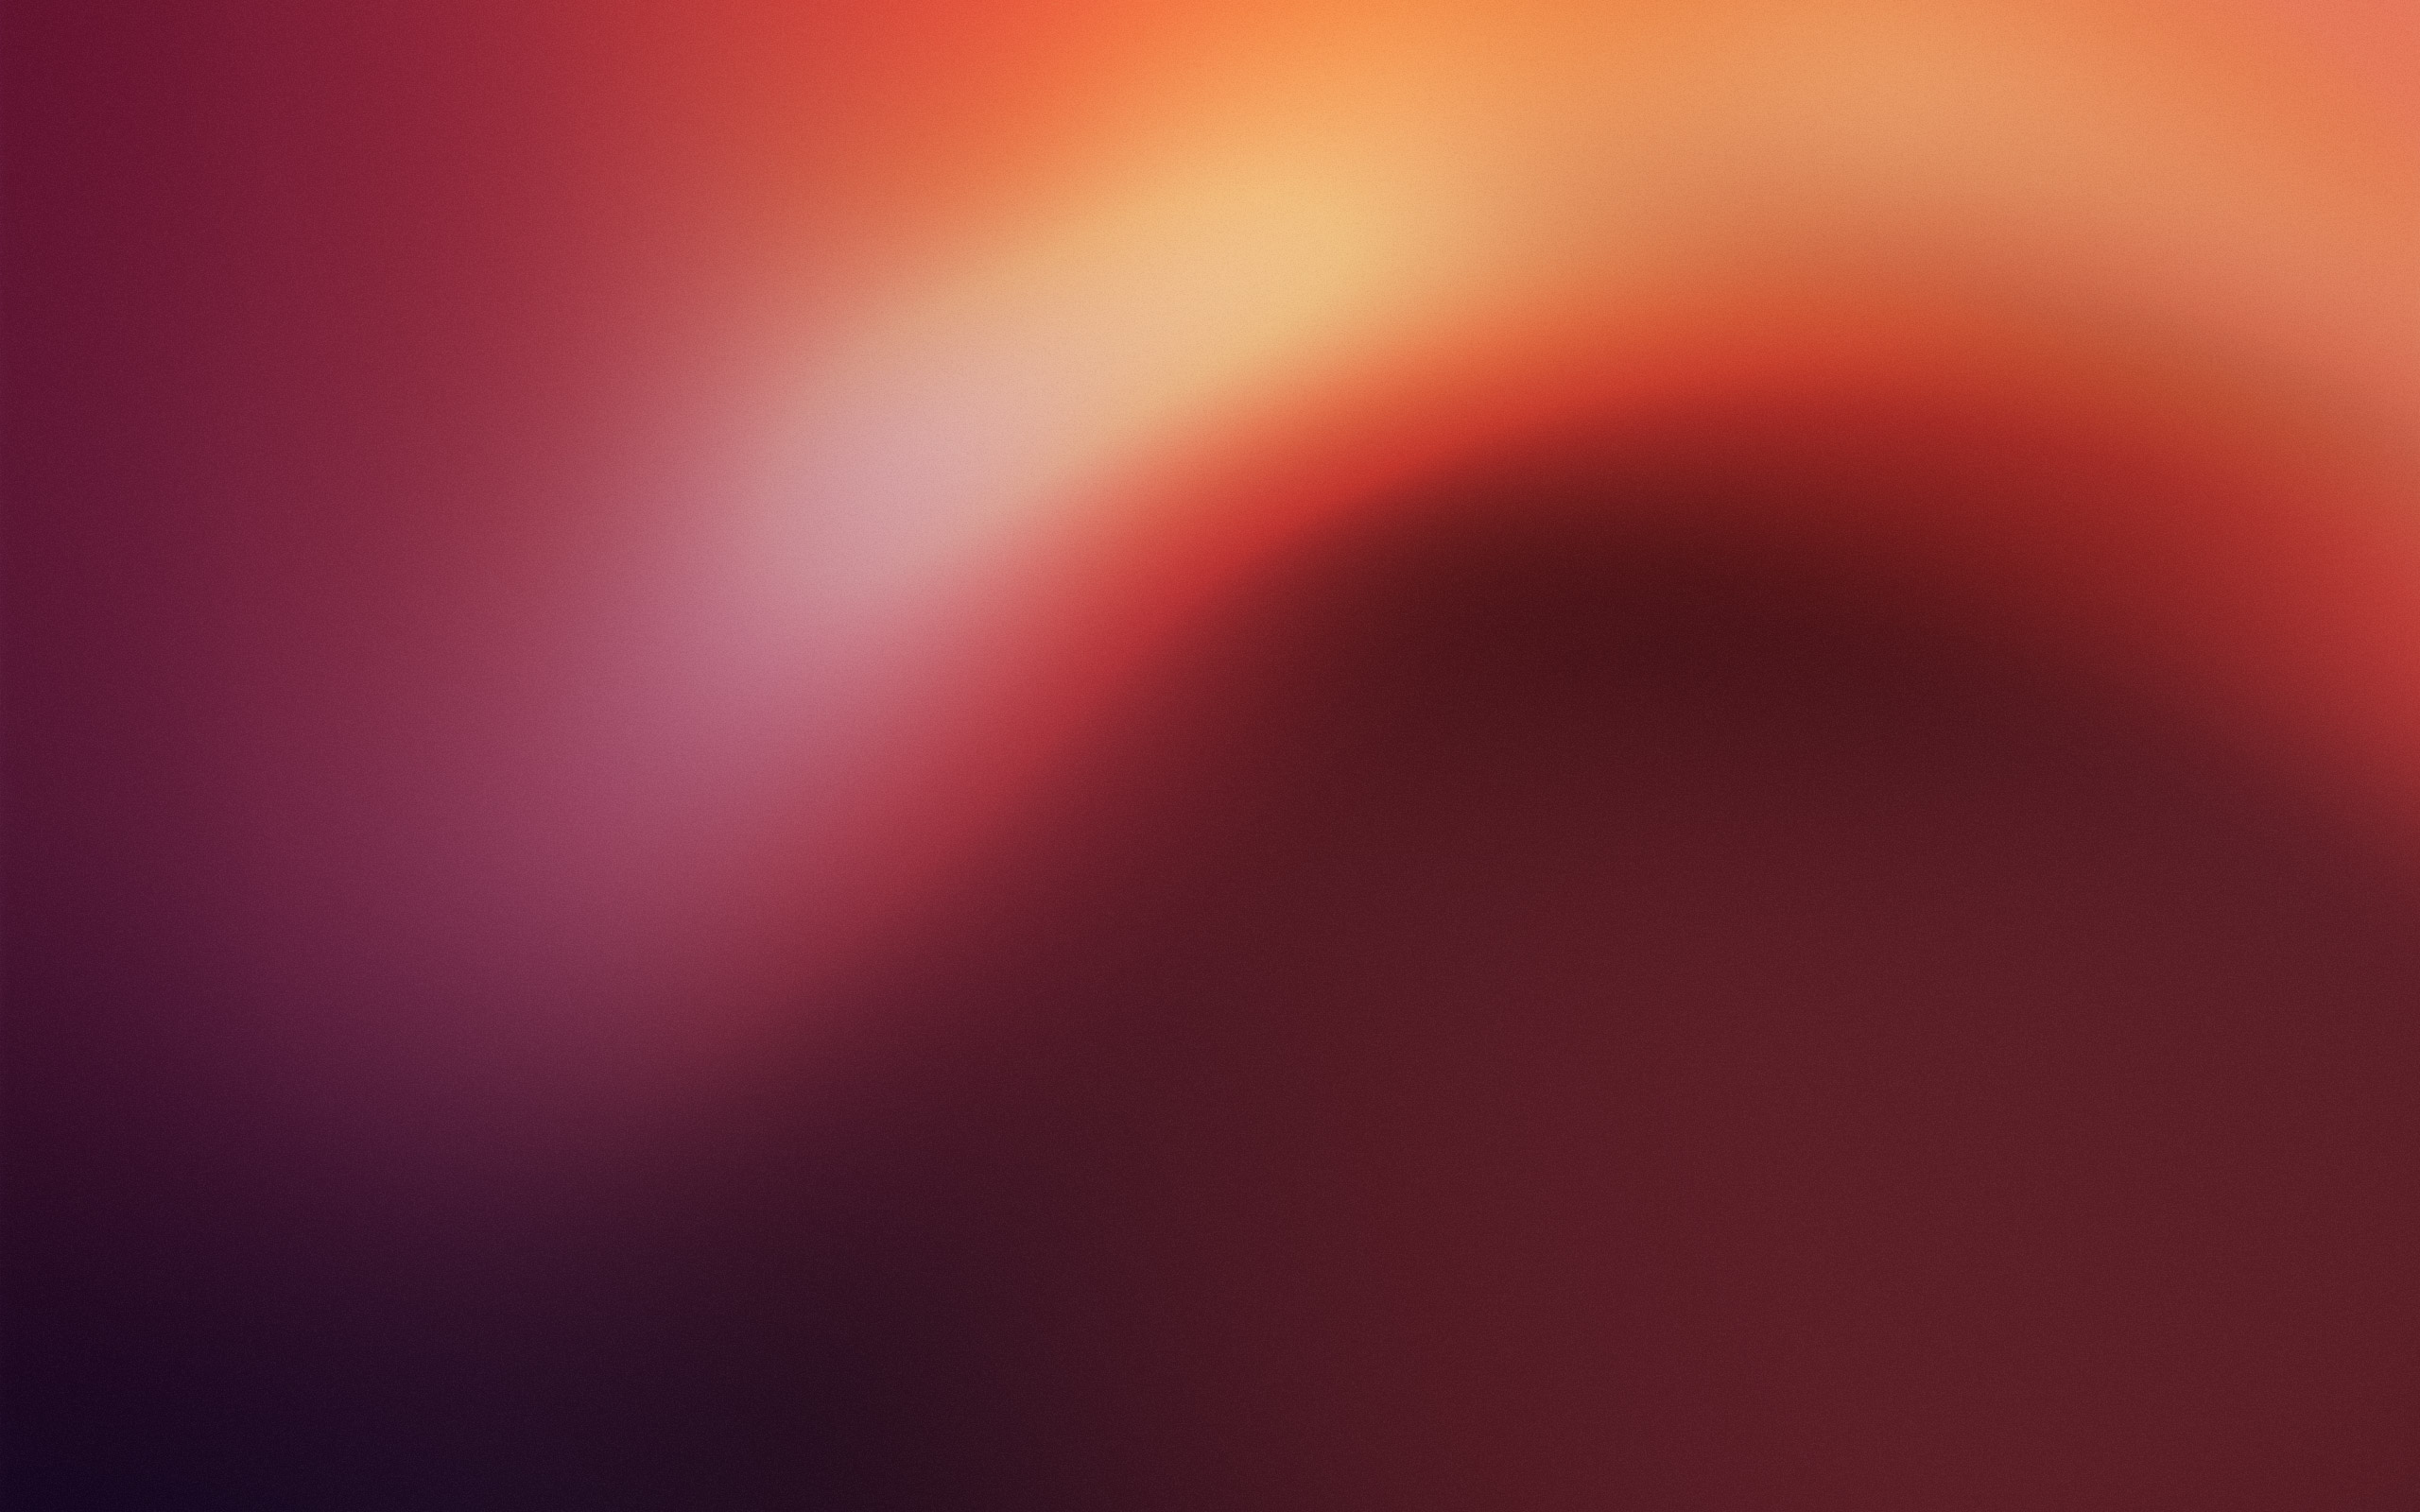 ubuntu fondo de pantalla,rojo,cielo,naranja,rosado,ligero